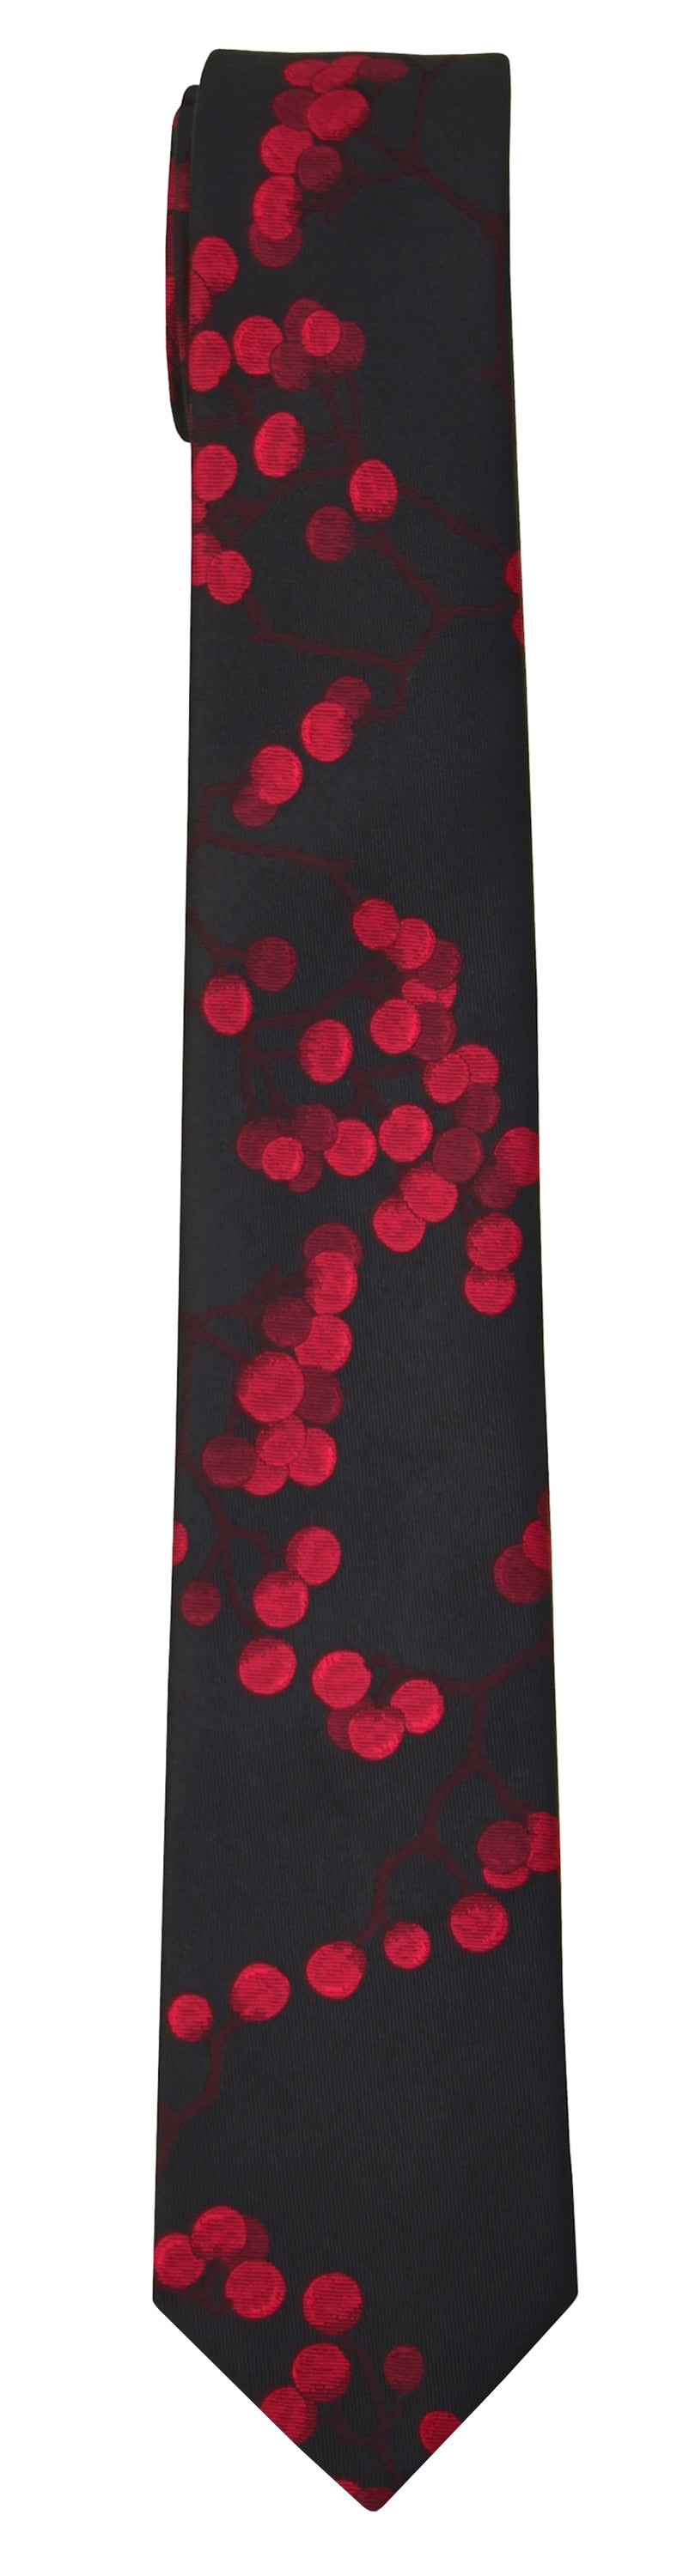 Mimi Fong Berries Tie in Black & Red